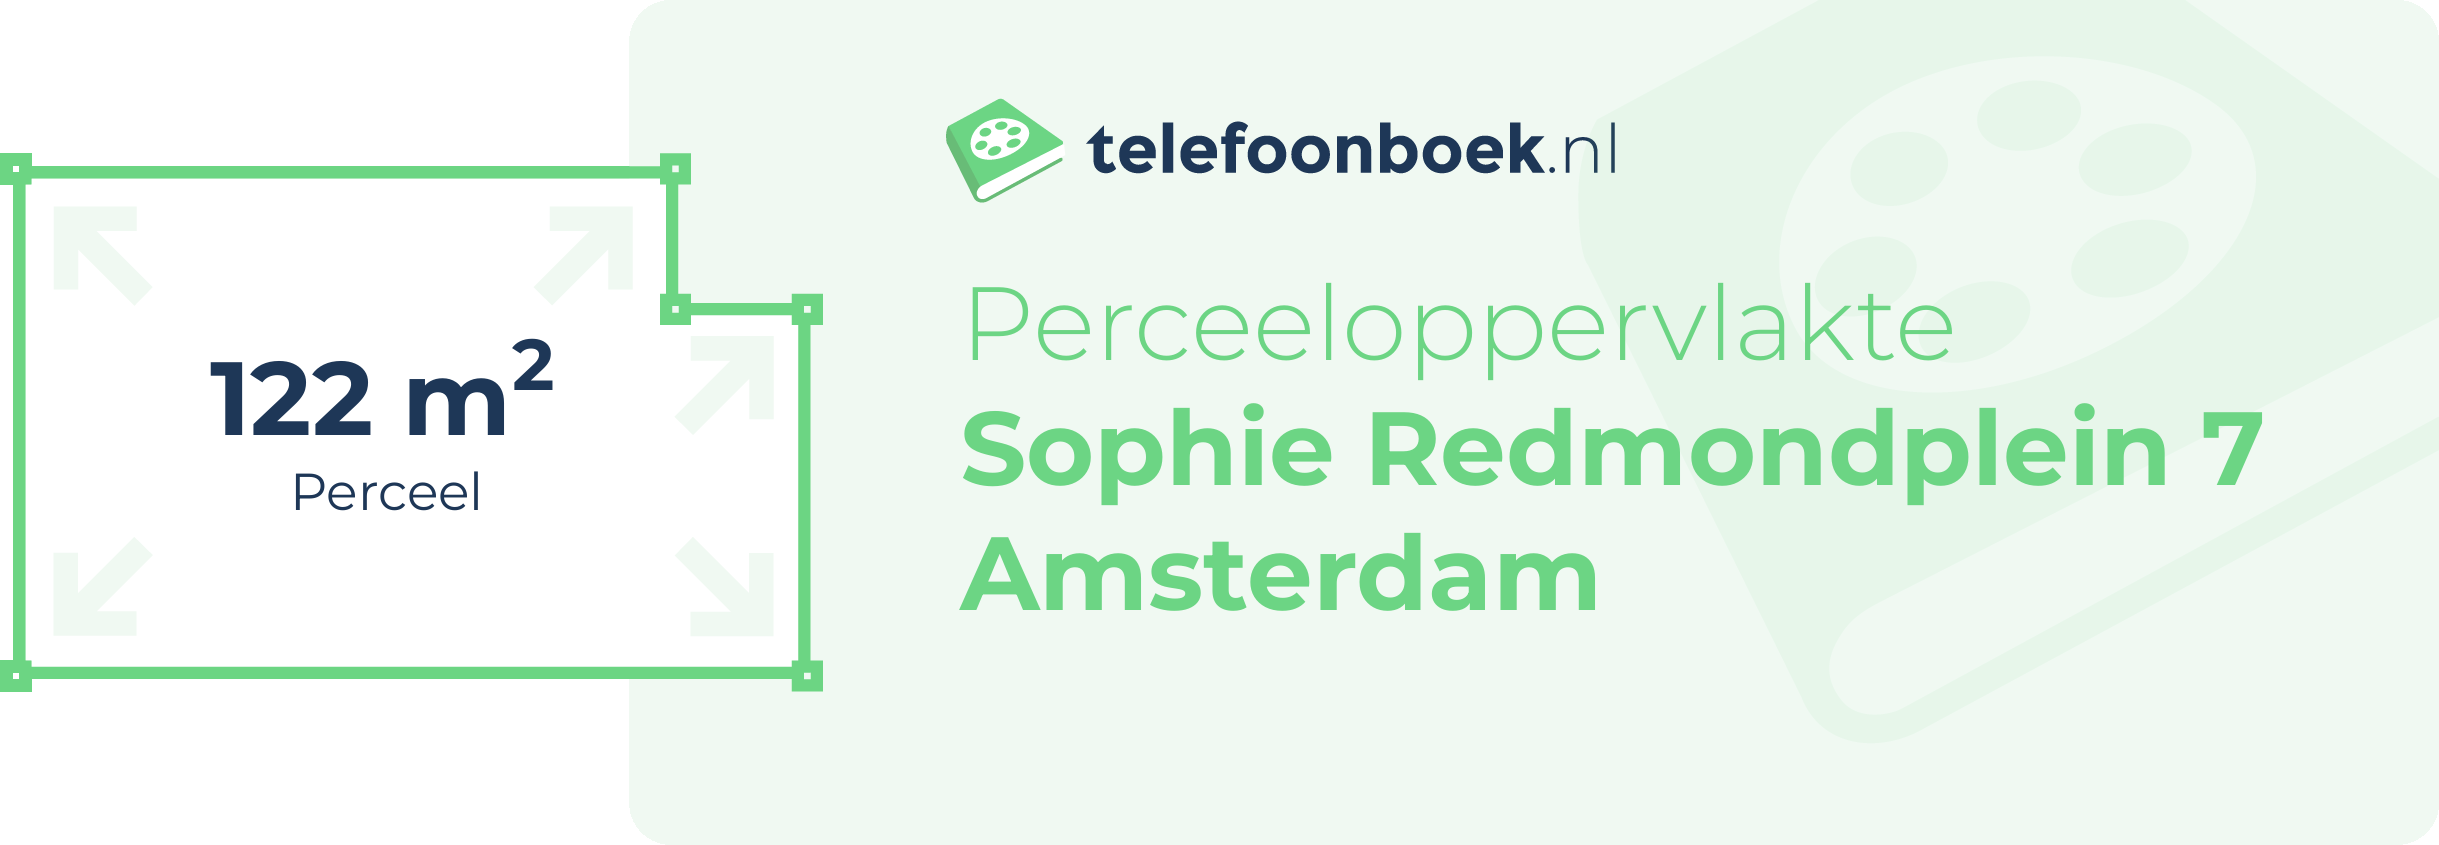 Perceeloppervlakte Sophie Redmondplein 7 Amsterdam